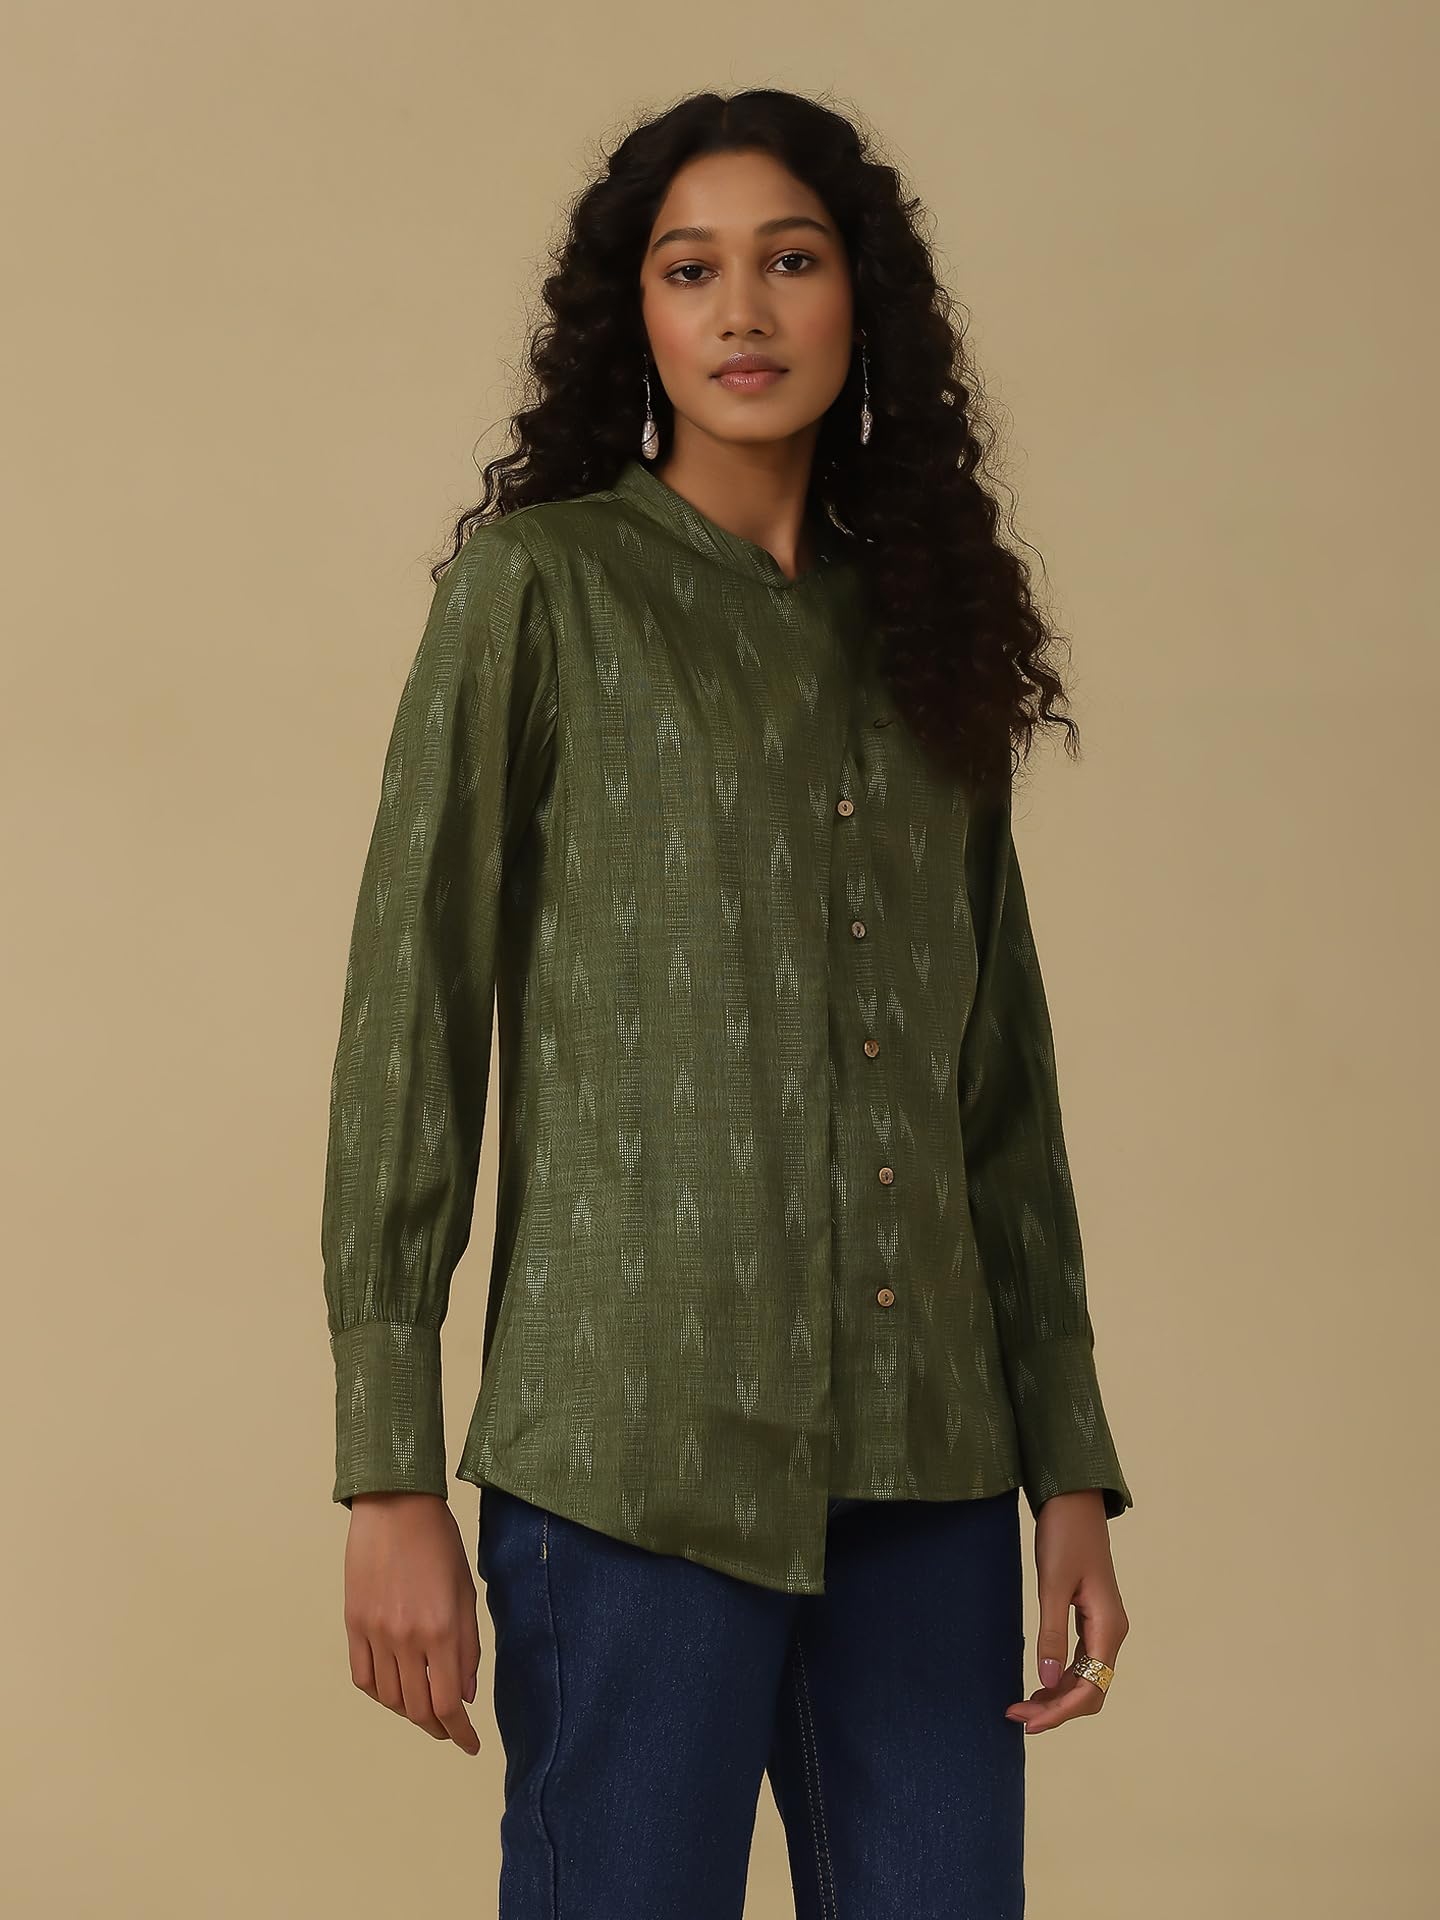 Aarke Ritu Kumar Green Yarn Dyed Shirt 